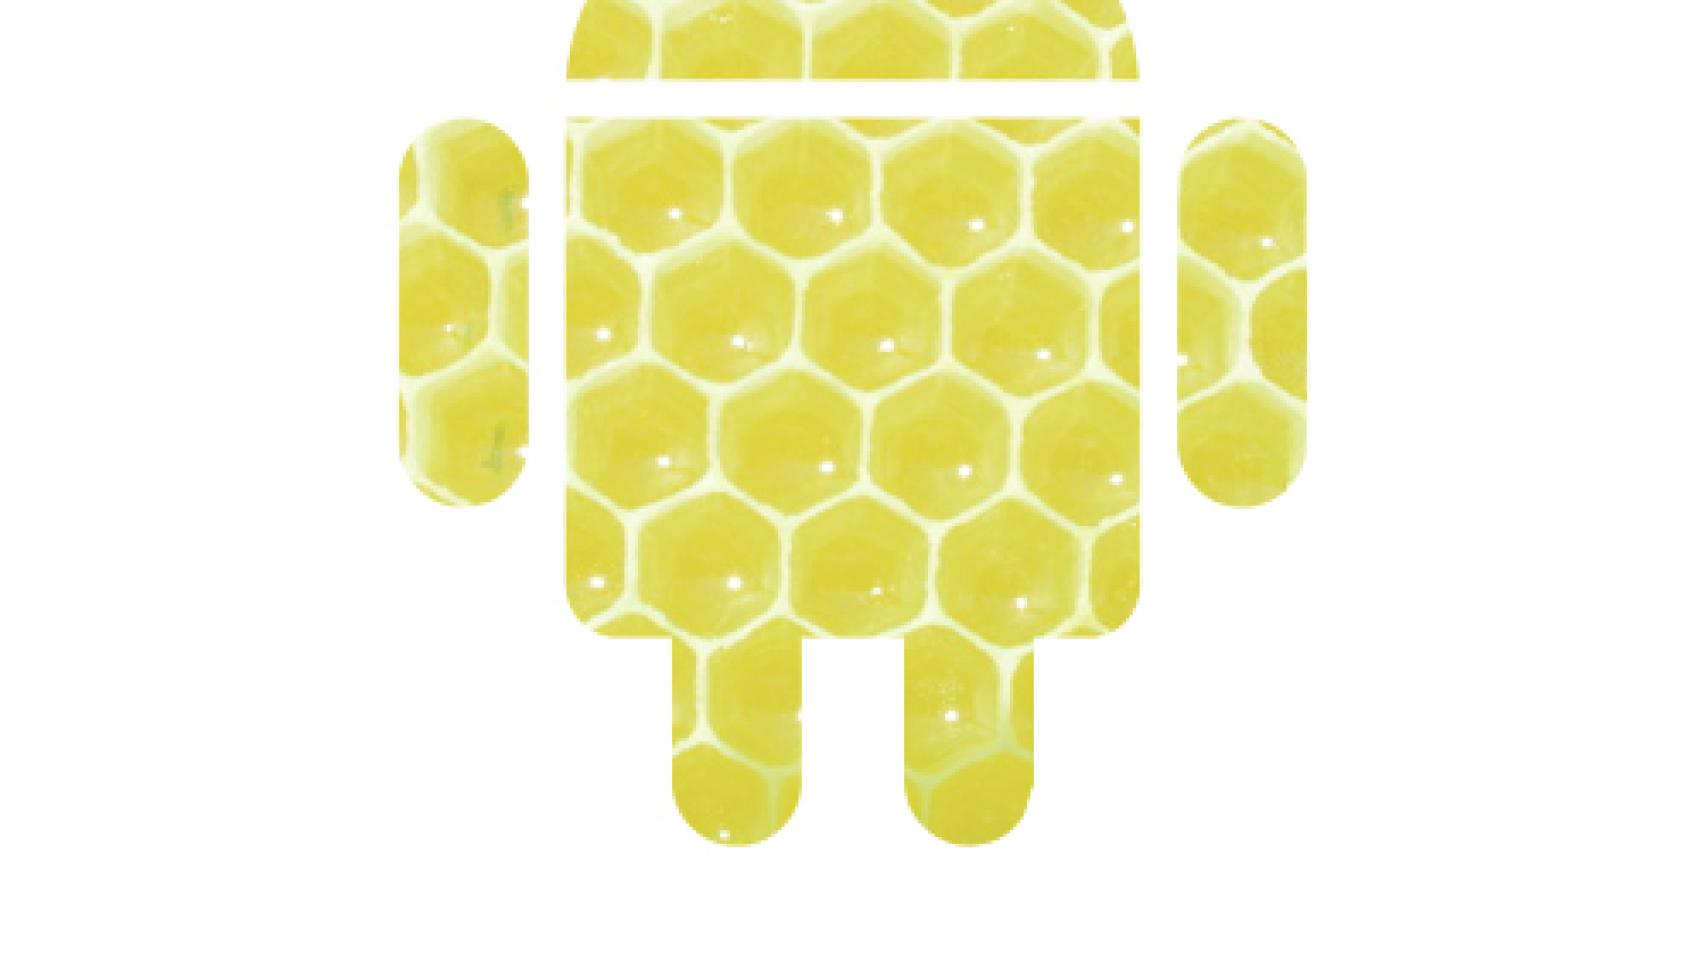 Android Honeybread: El futuro